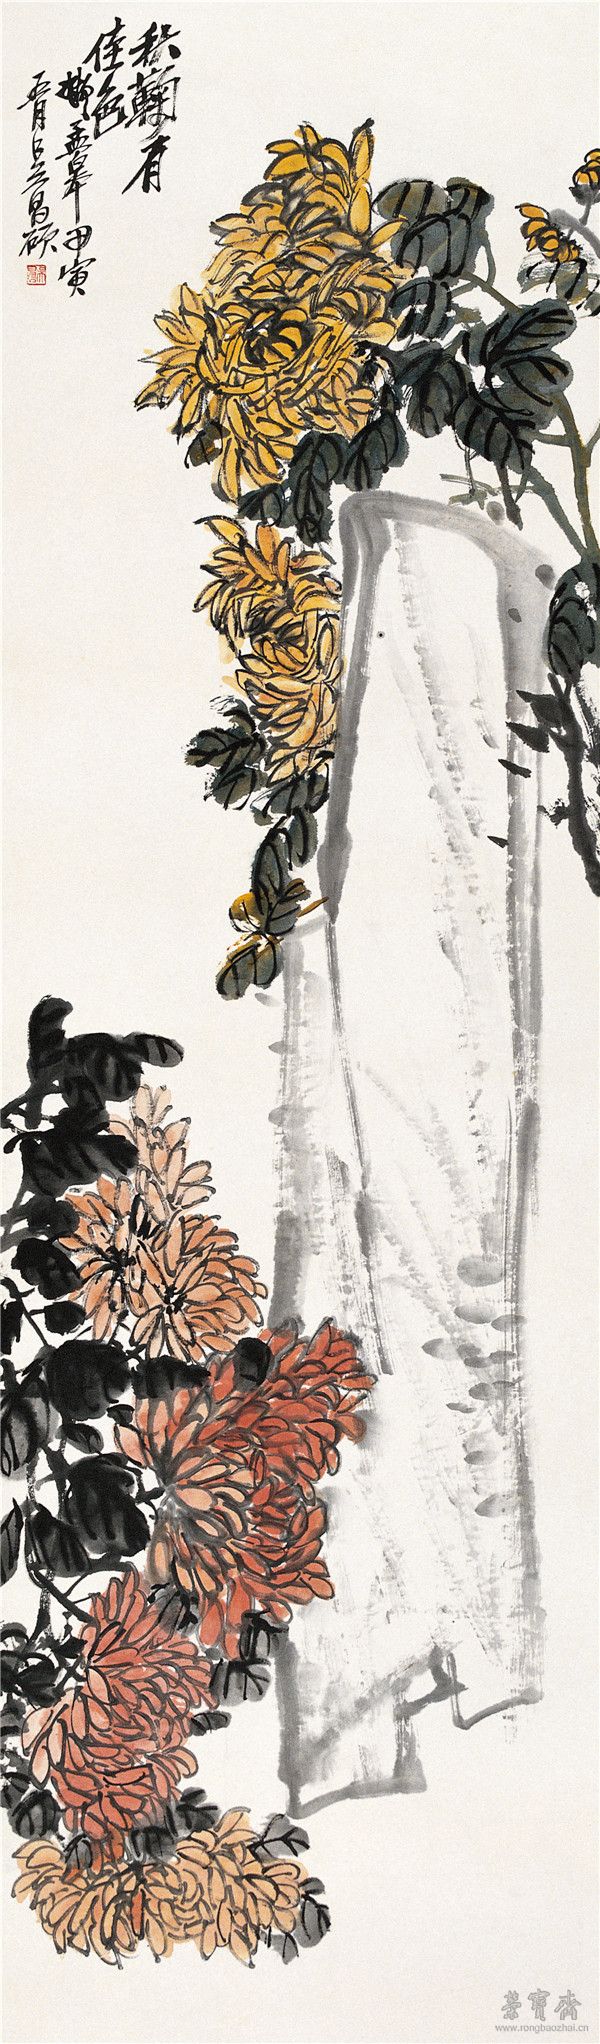 秋菊图 纸本设色 1914年　151cm×40.8cm